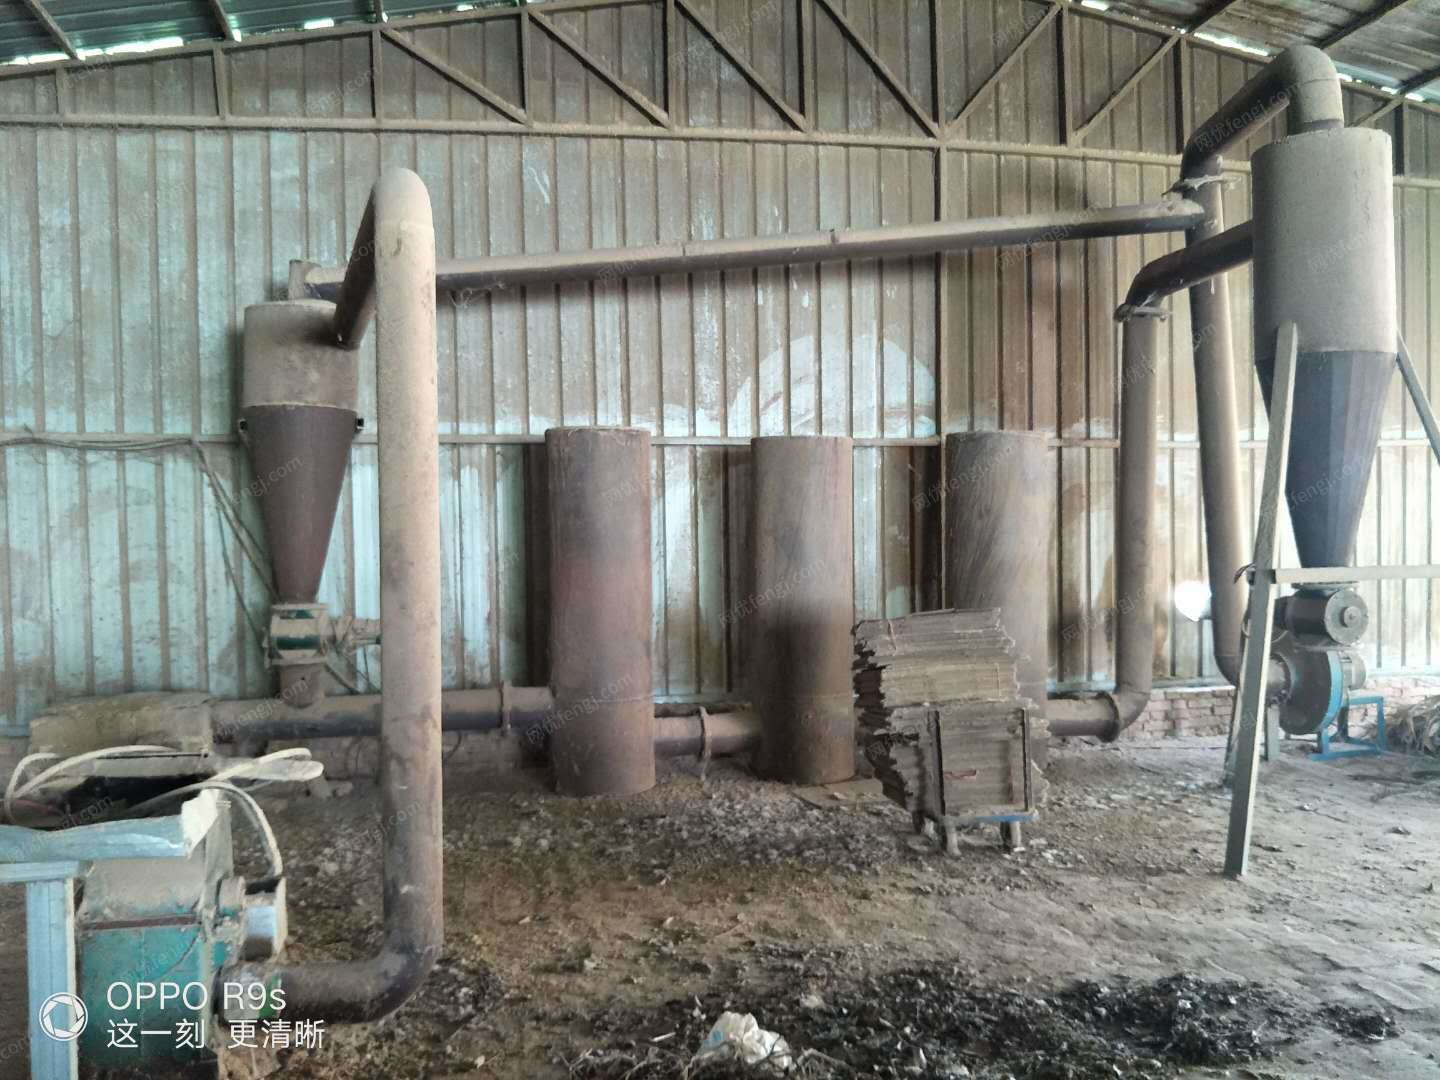 木炭厂处理粉碎机，烘干机各1台，制棒机木炭机2台（详见图）